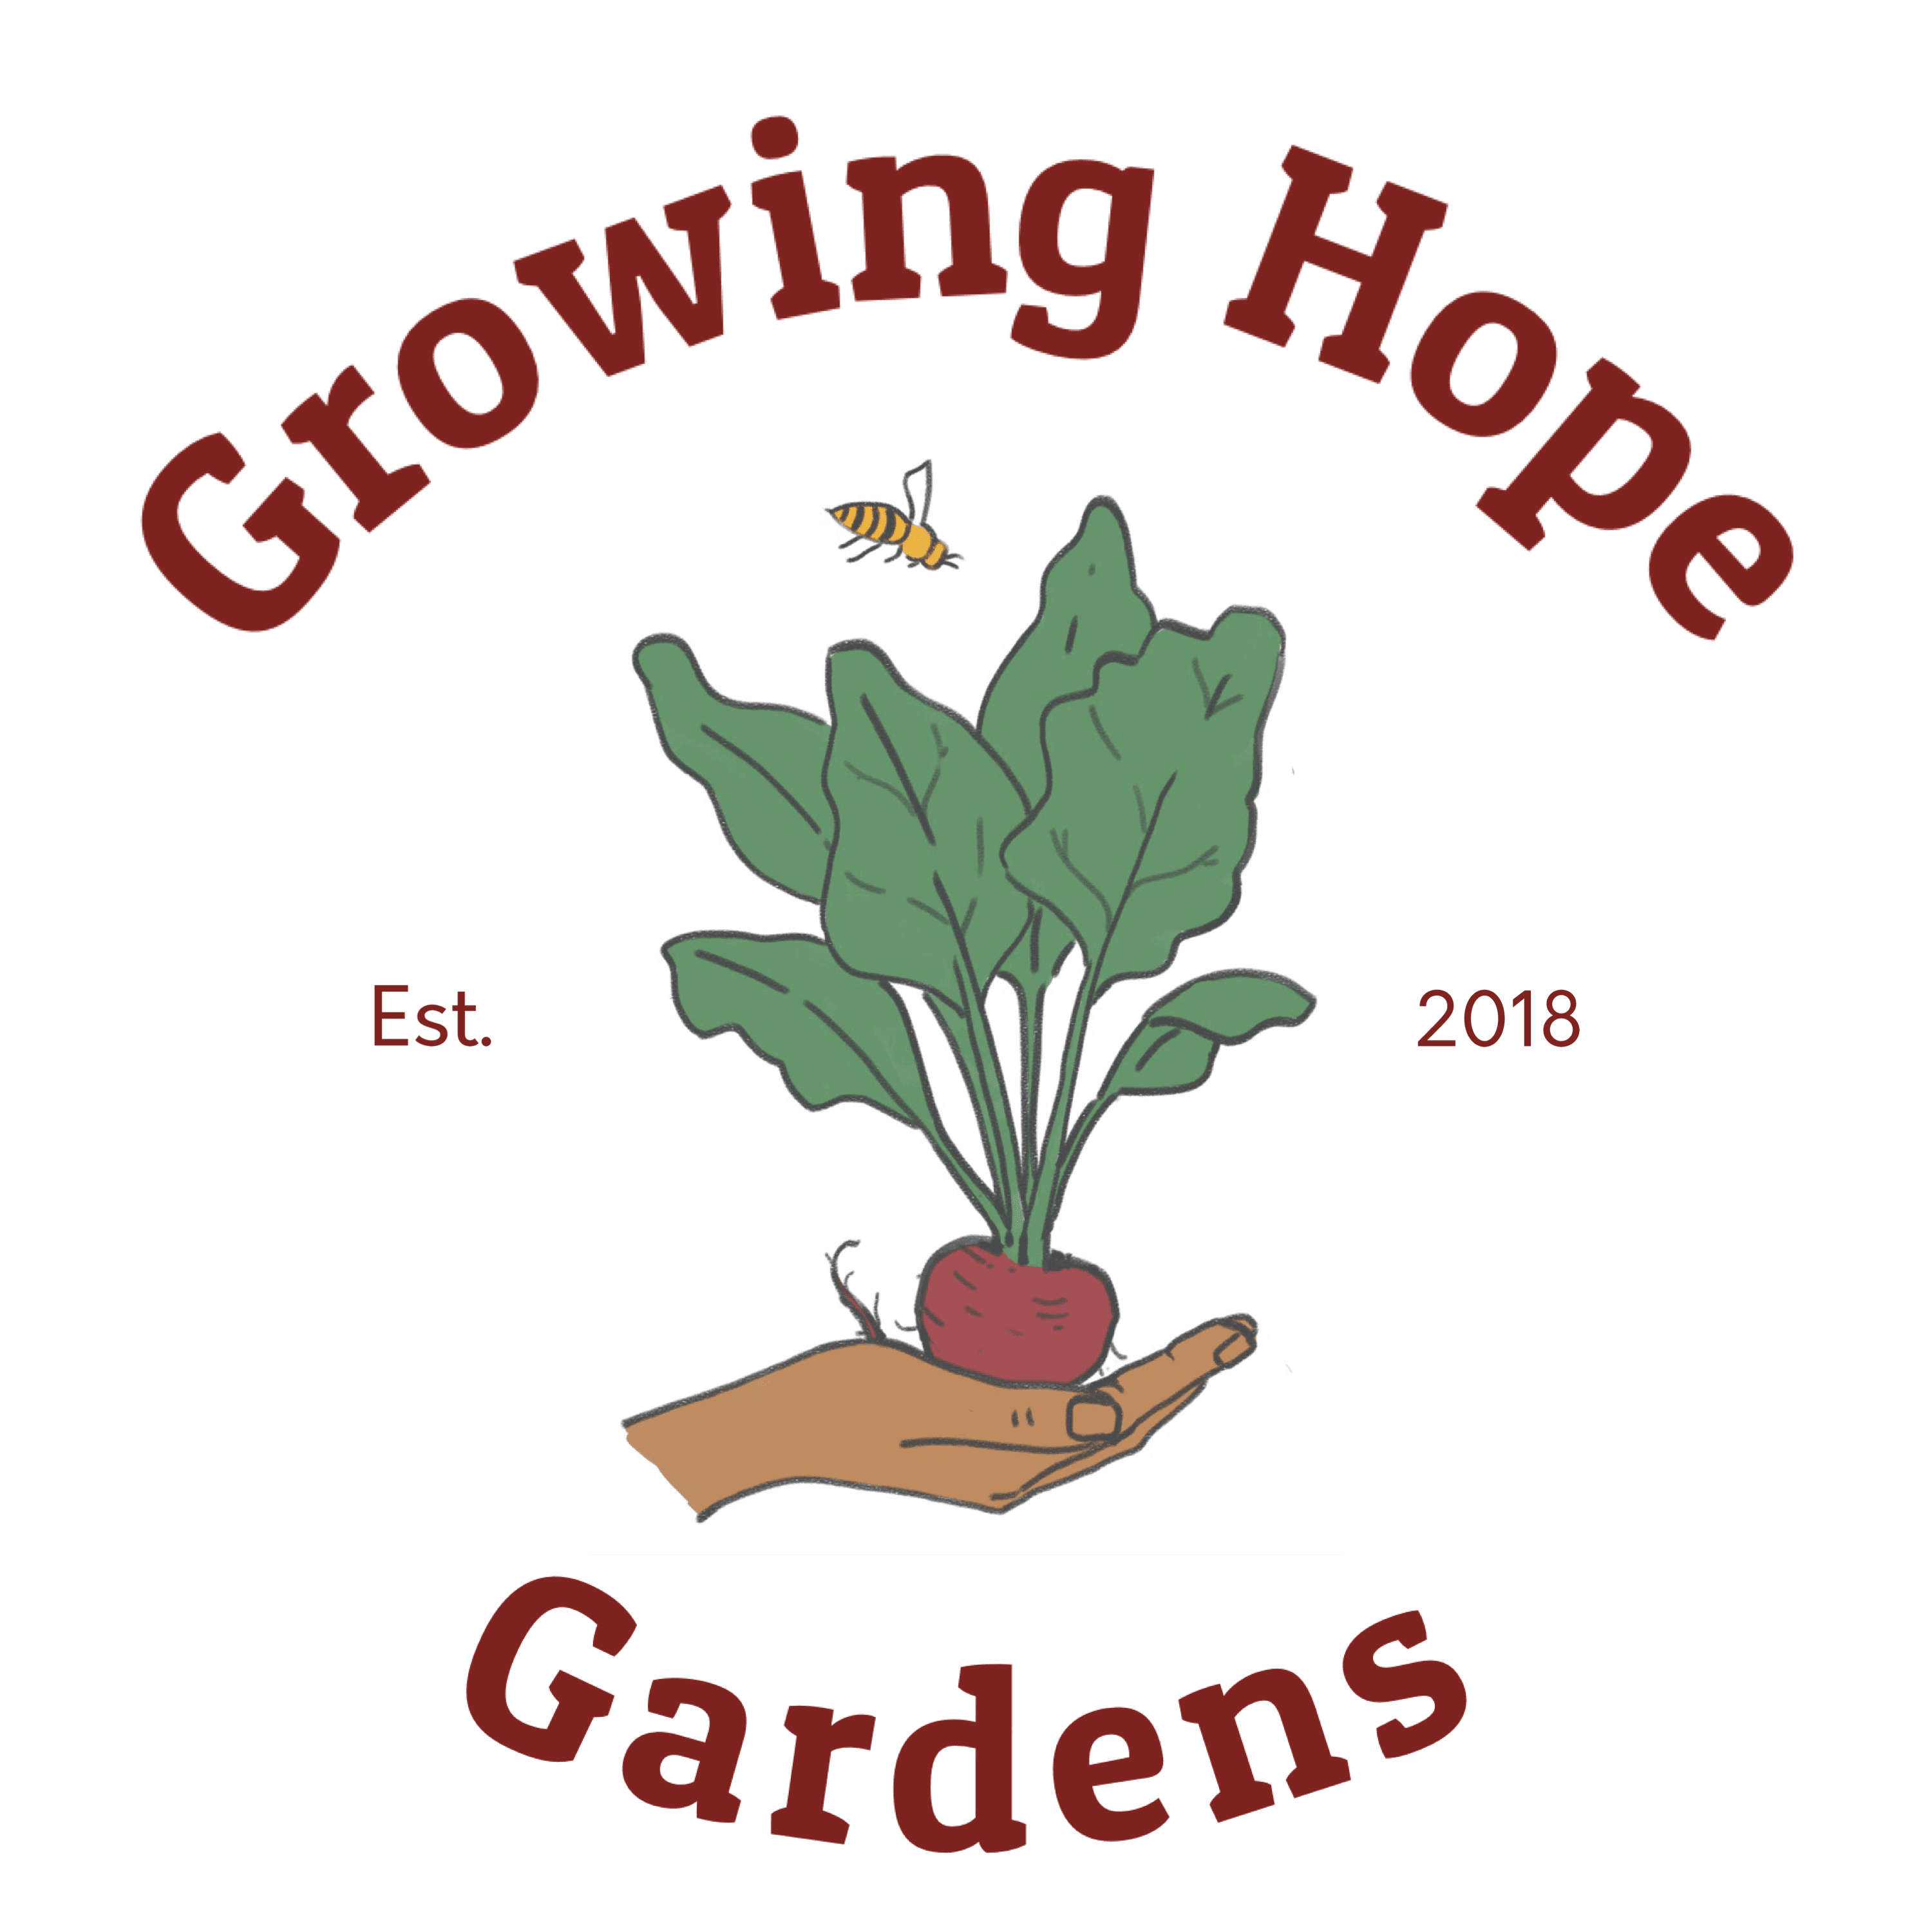 Growing Hope Gardens volunteer opportunities | VolunteerMatch